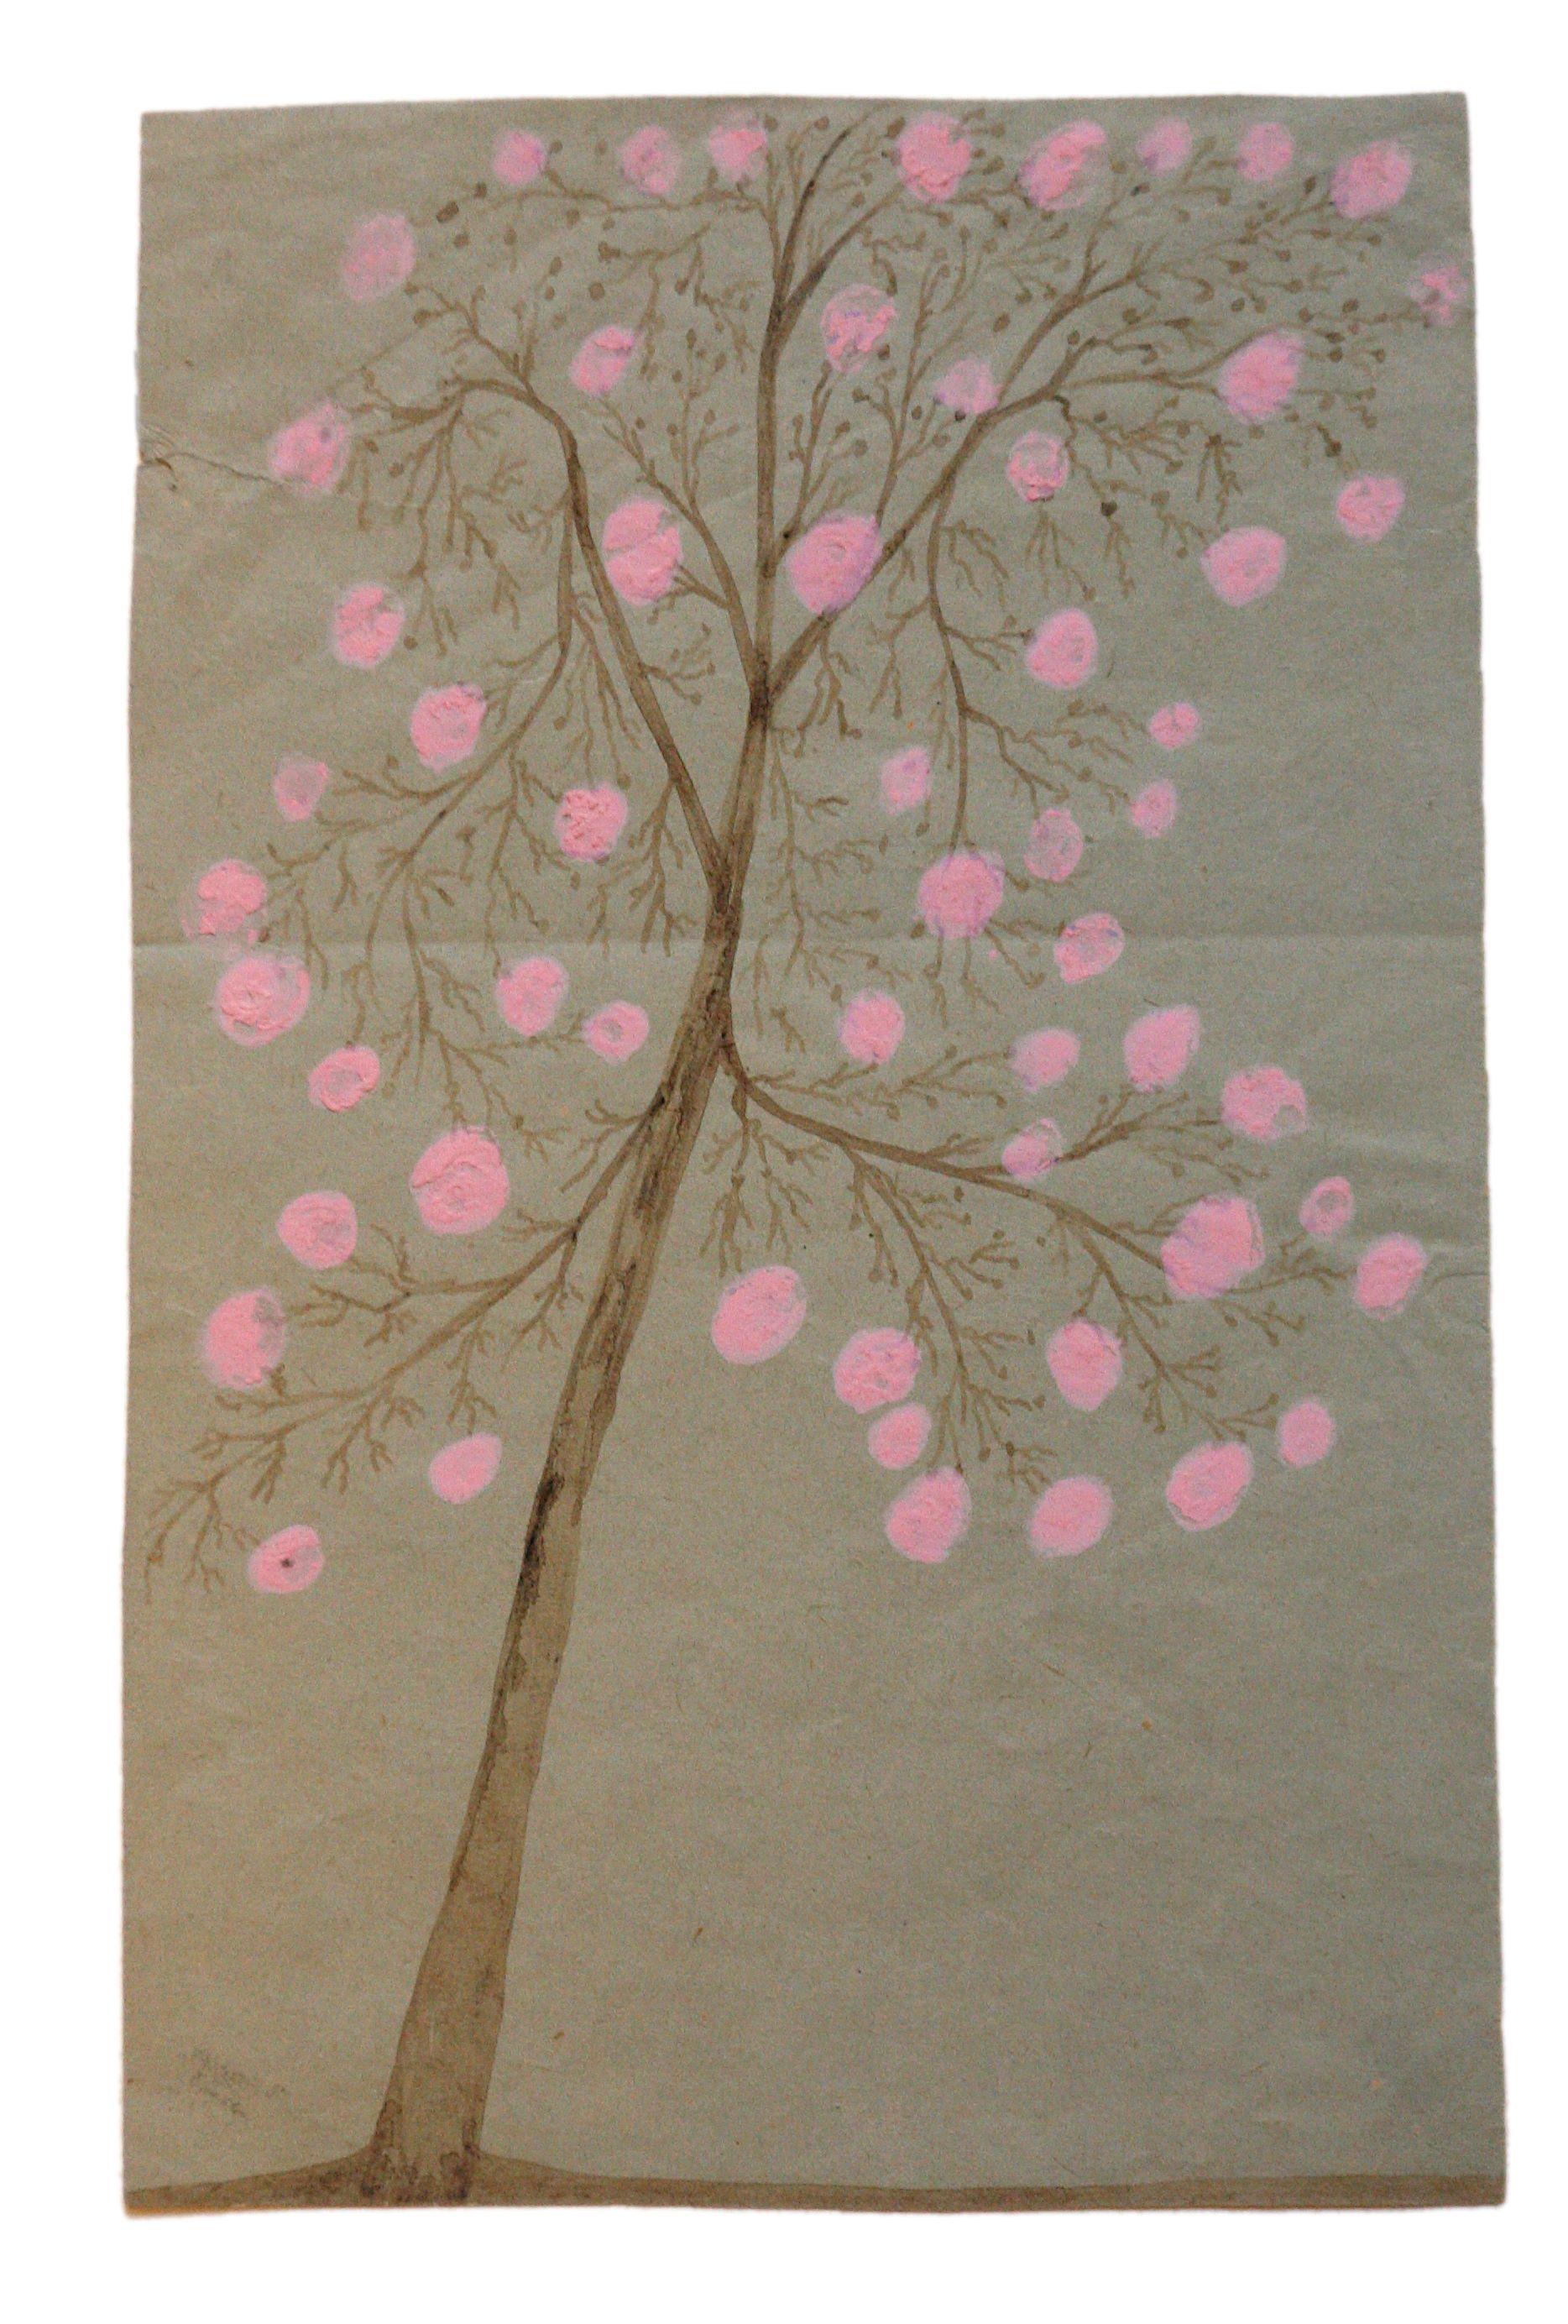 Løvtræ tegnet af Karoline på tyndt blåt papir